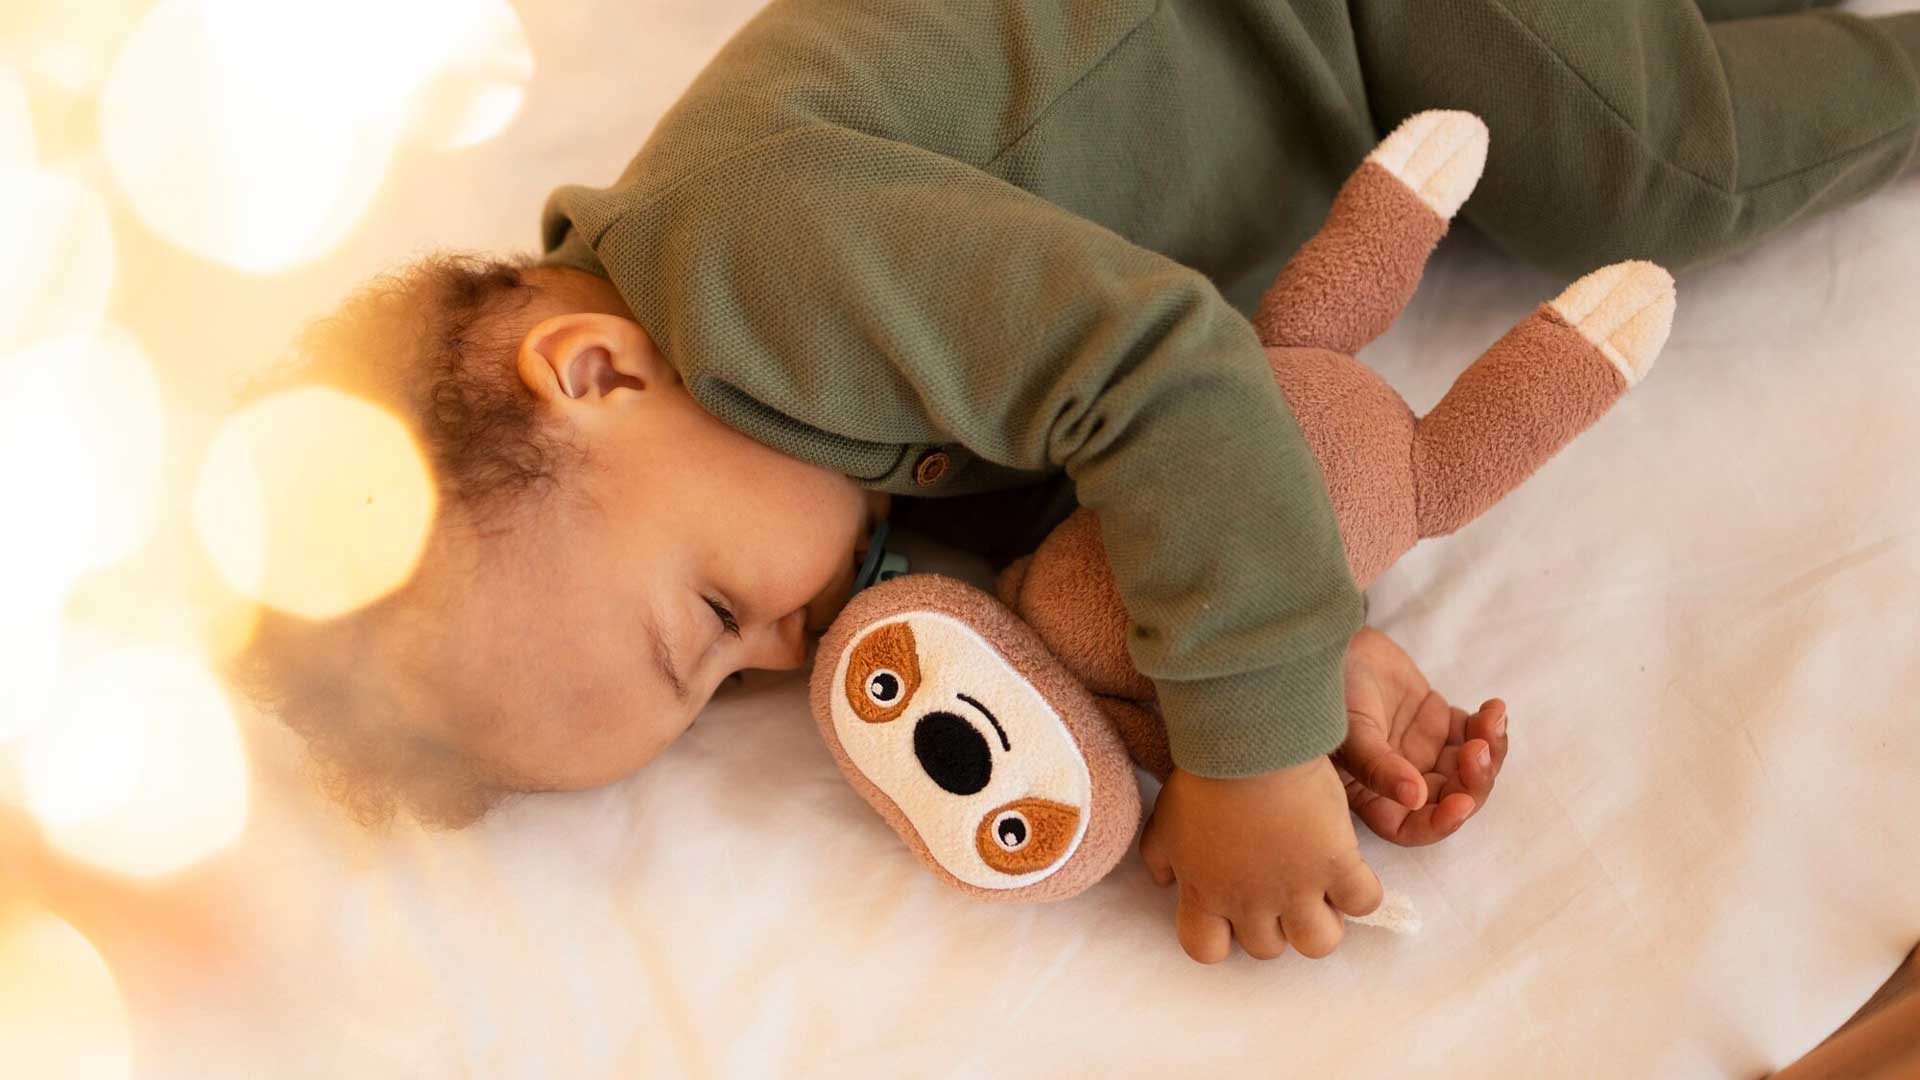 Criança dormindo abraçada a uma pelúcia